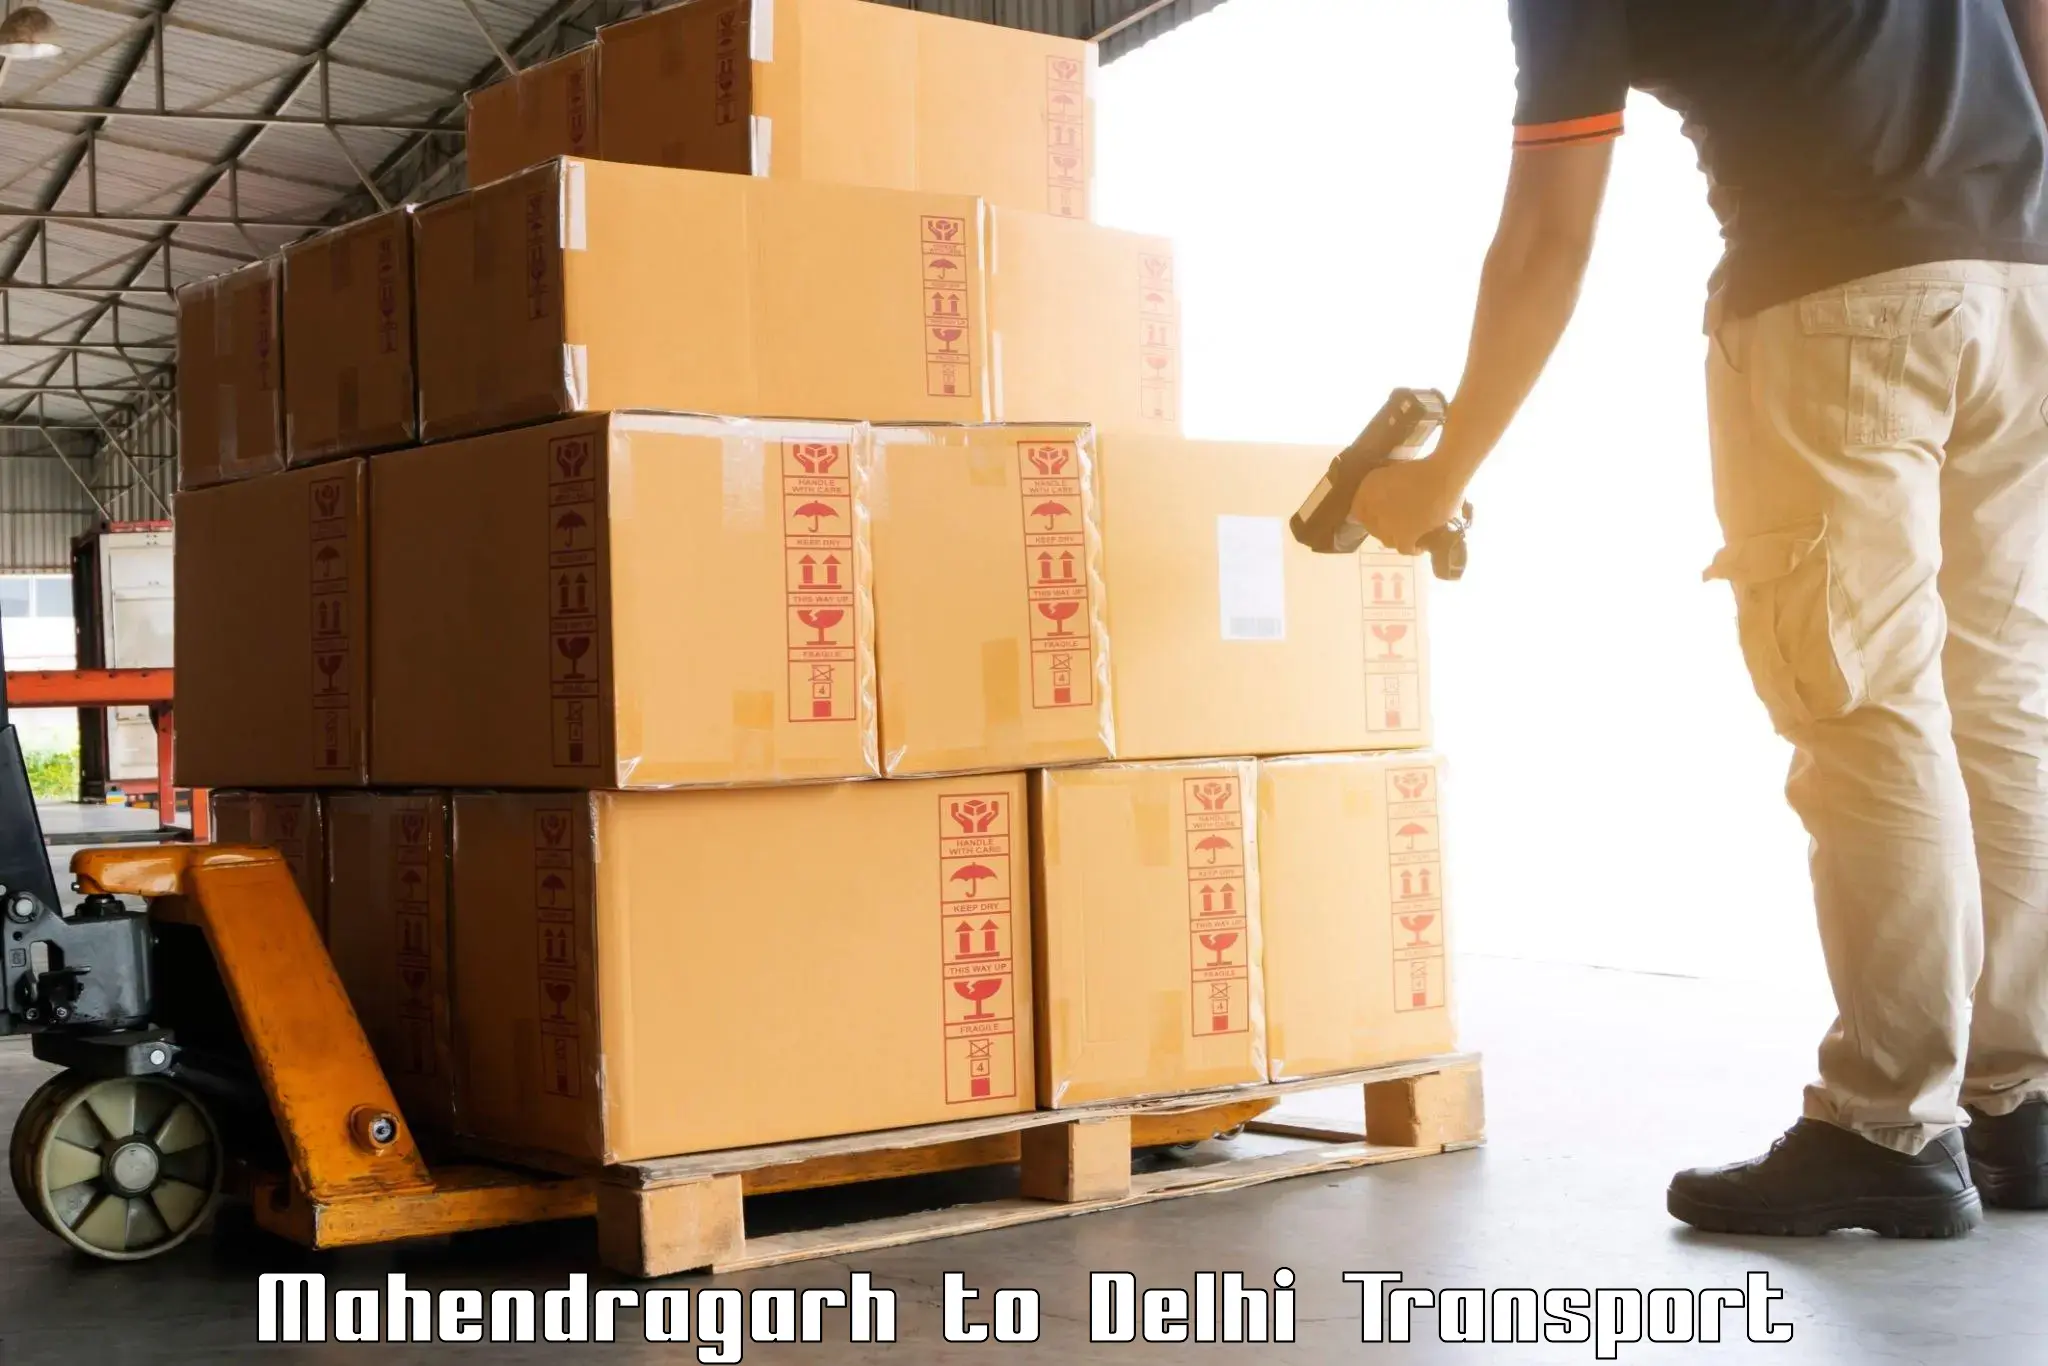 Shipping partner Mahendragarh to Sarojini Nagar